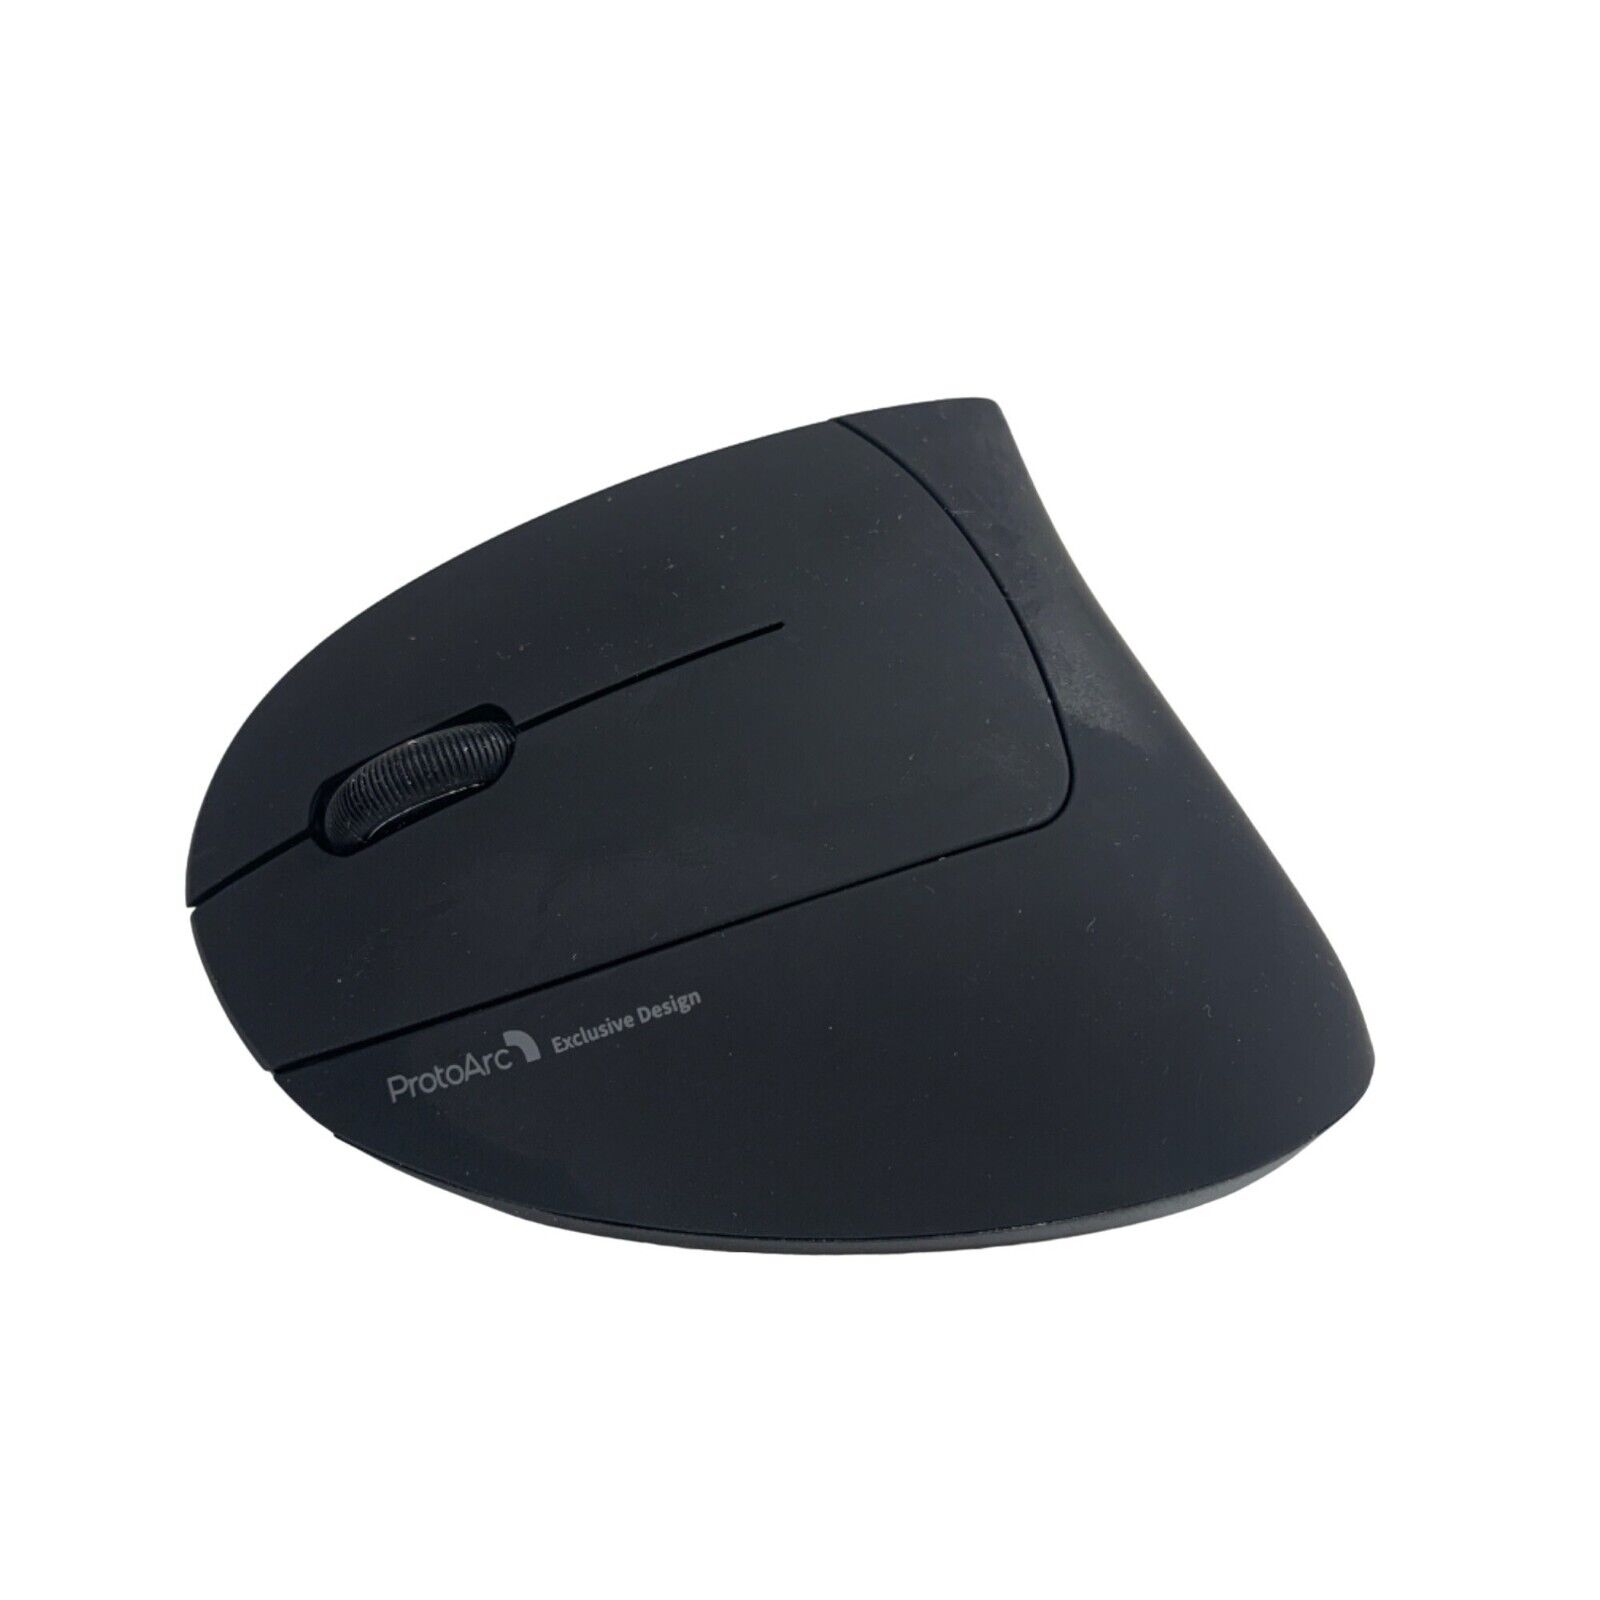 ProtoArc Model EM13 Designed Left Handed Vertical Mouse Bluetooth